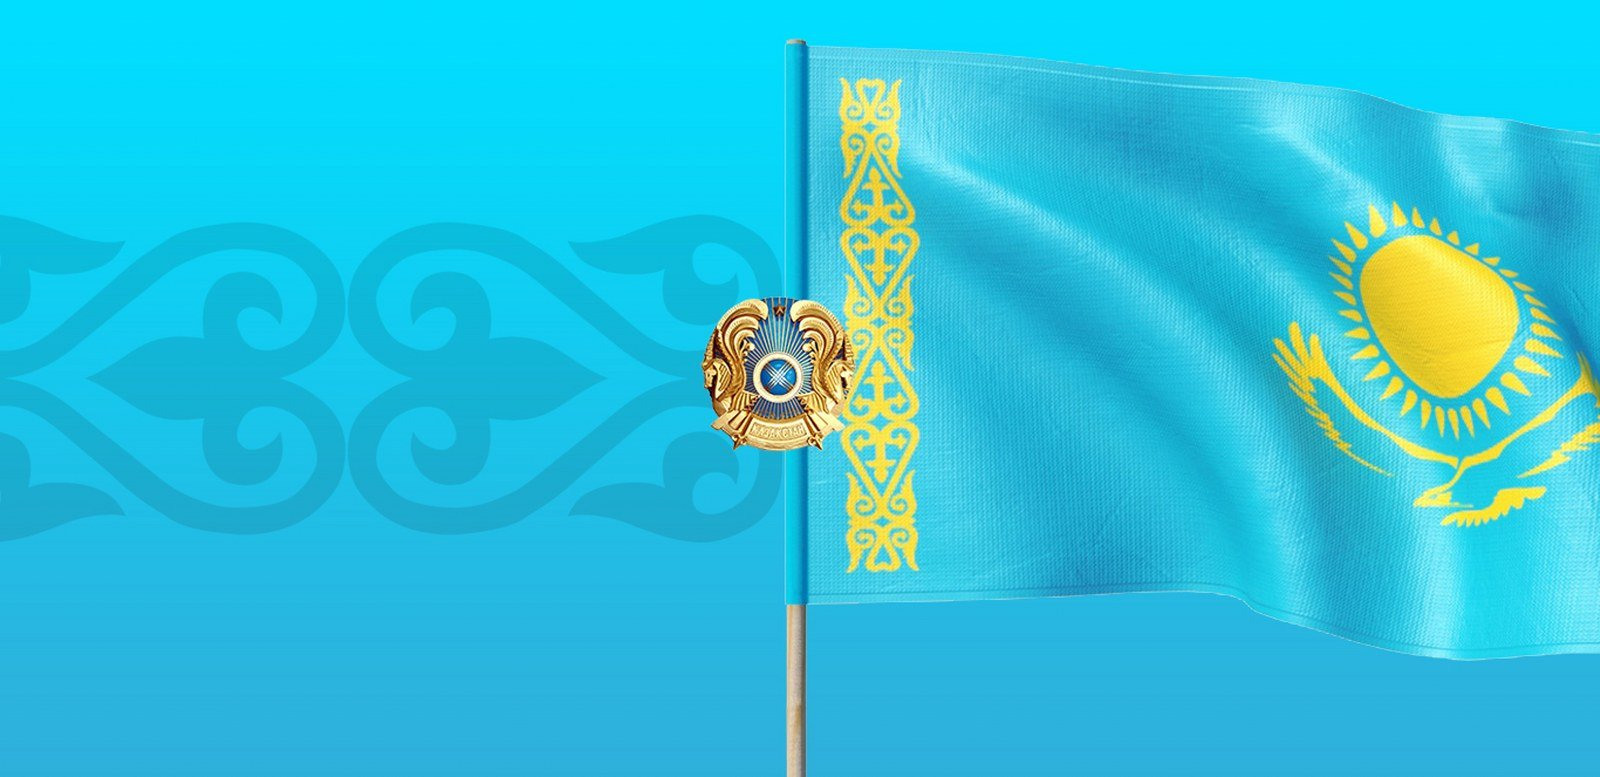 Фон для слайда с казахским орнаментом